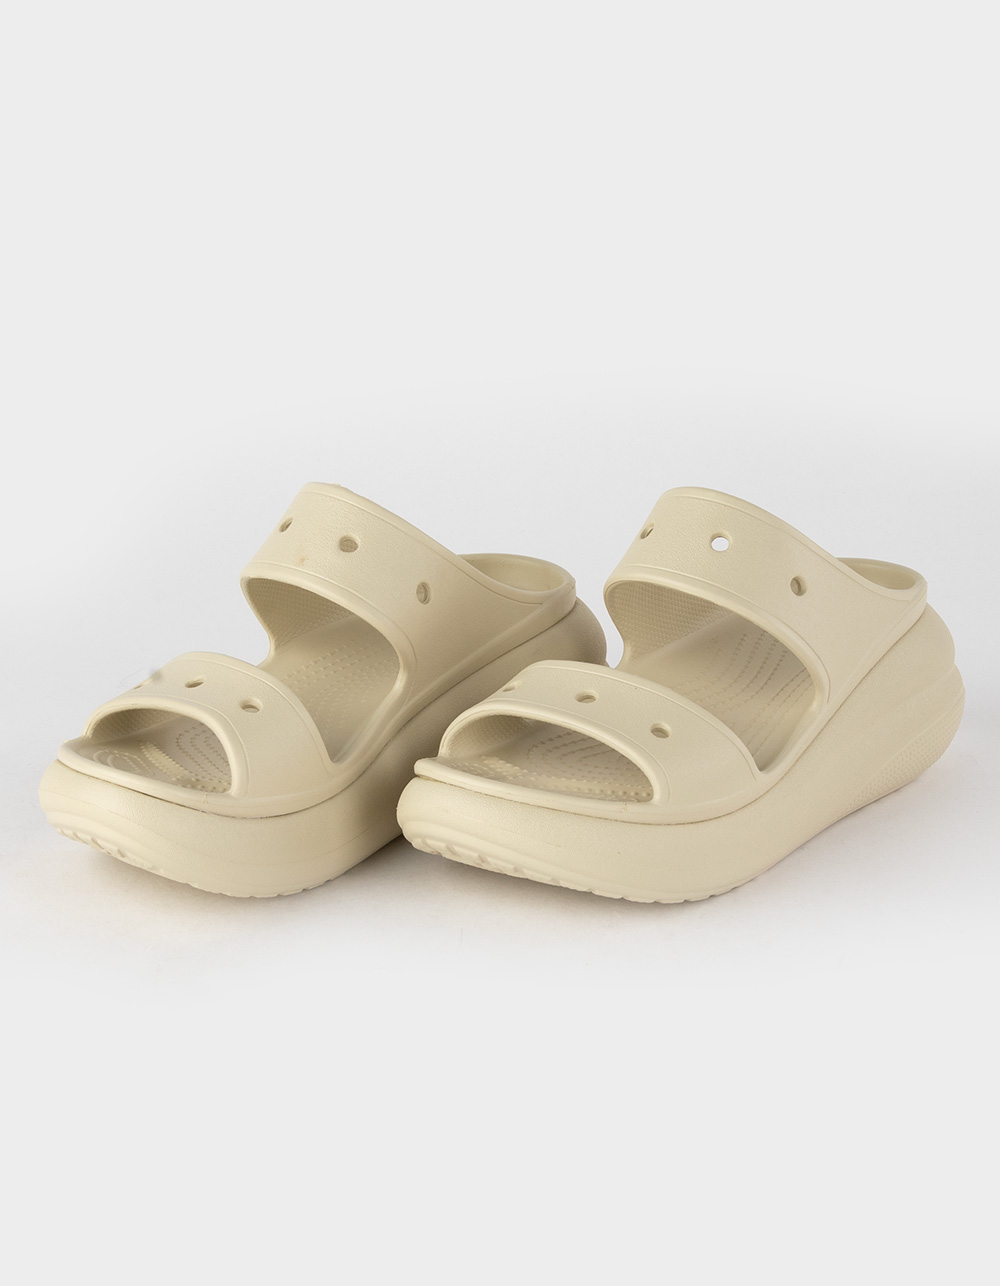 Buy Crocs Peach Isabella Women Sandals Online-anthinhphatland.vn